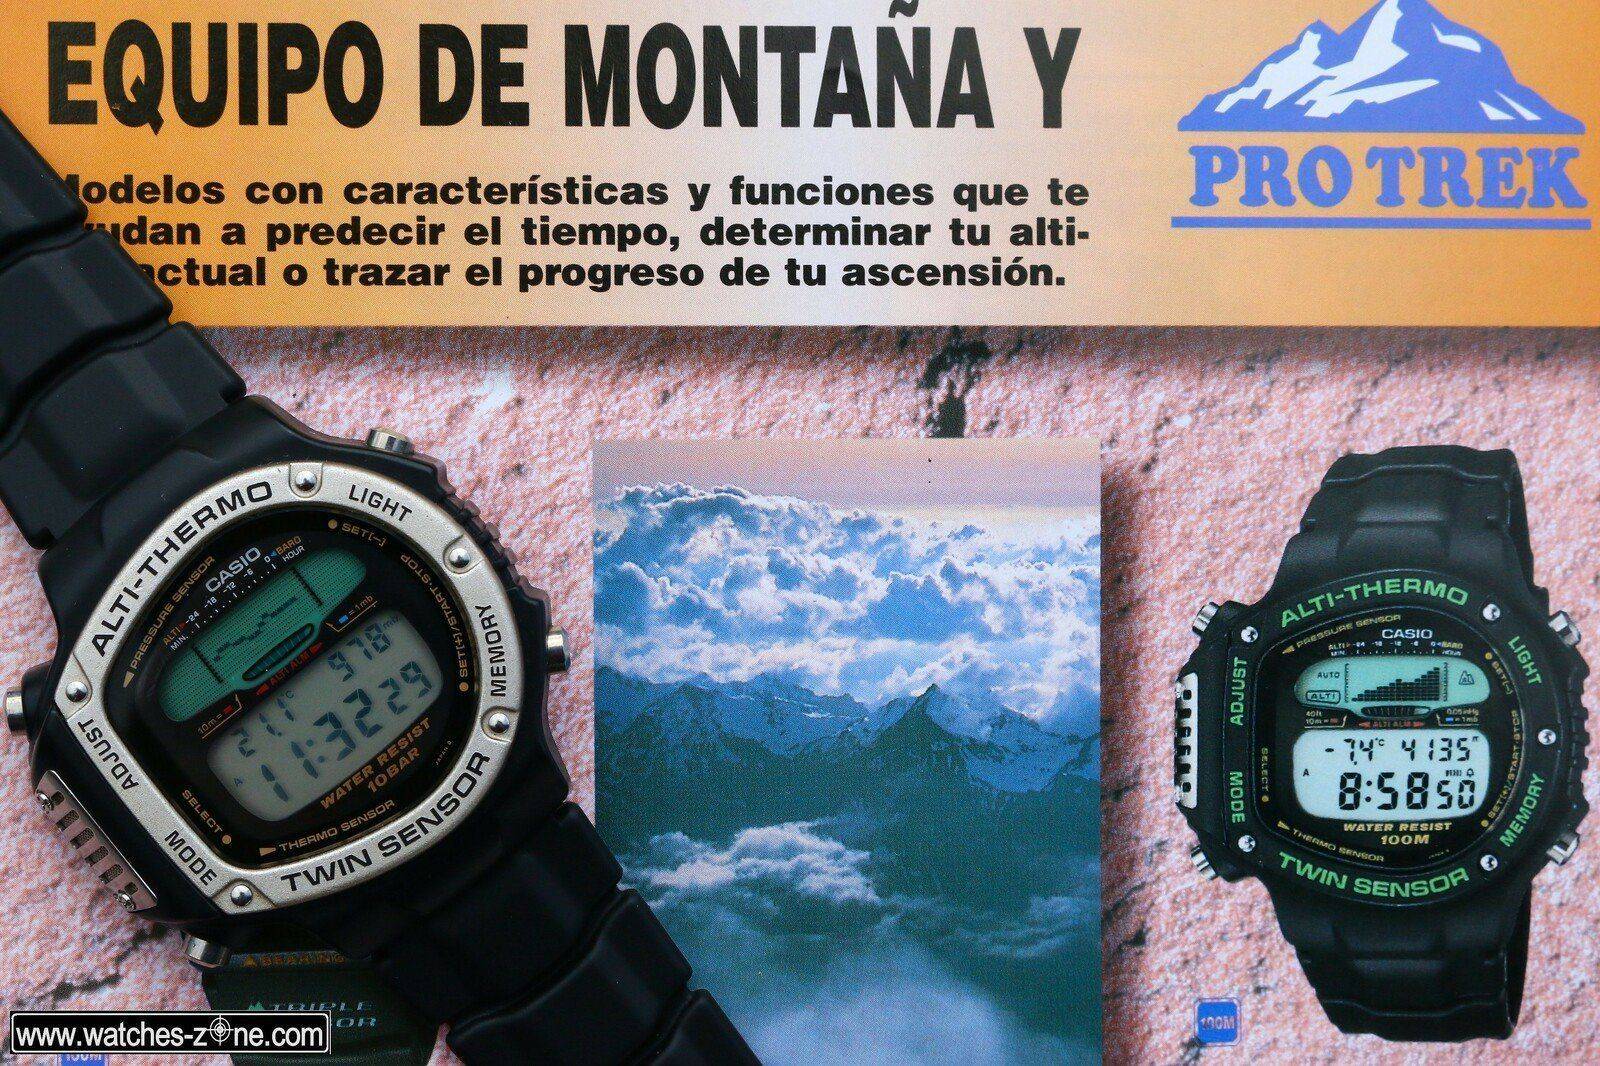 El Casio Protrek ALT-6100-1V Twin Sensor Especial Edition | Relojes  Especiales, EL foro de relojes